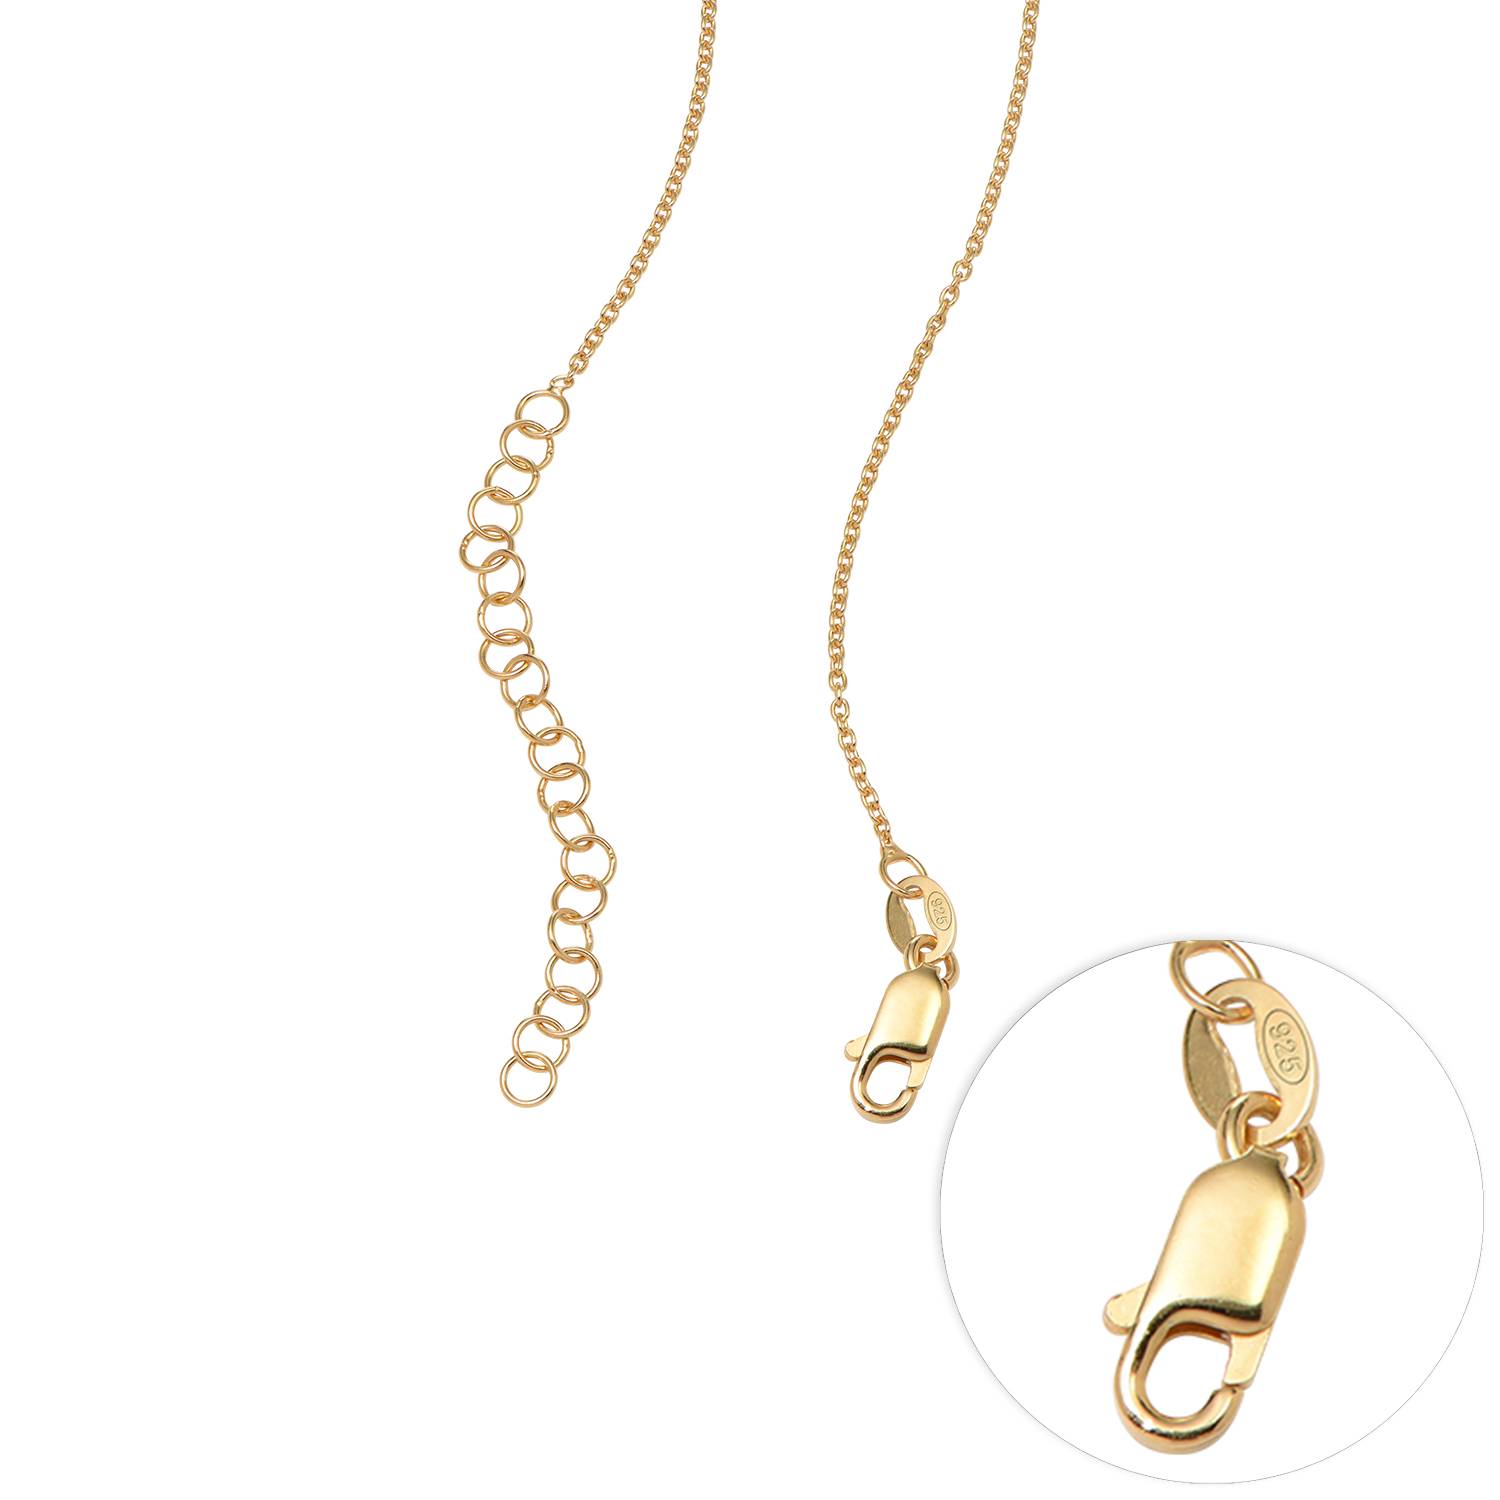 Claire sammenflettede hjerter halskæde i guld vermeil med diamanter-4 produkt billede